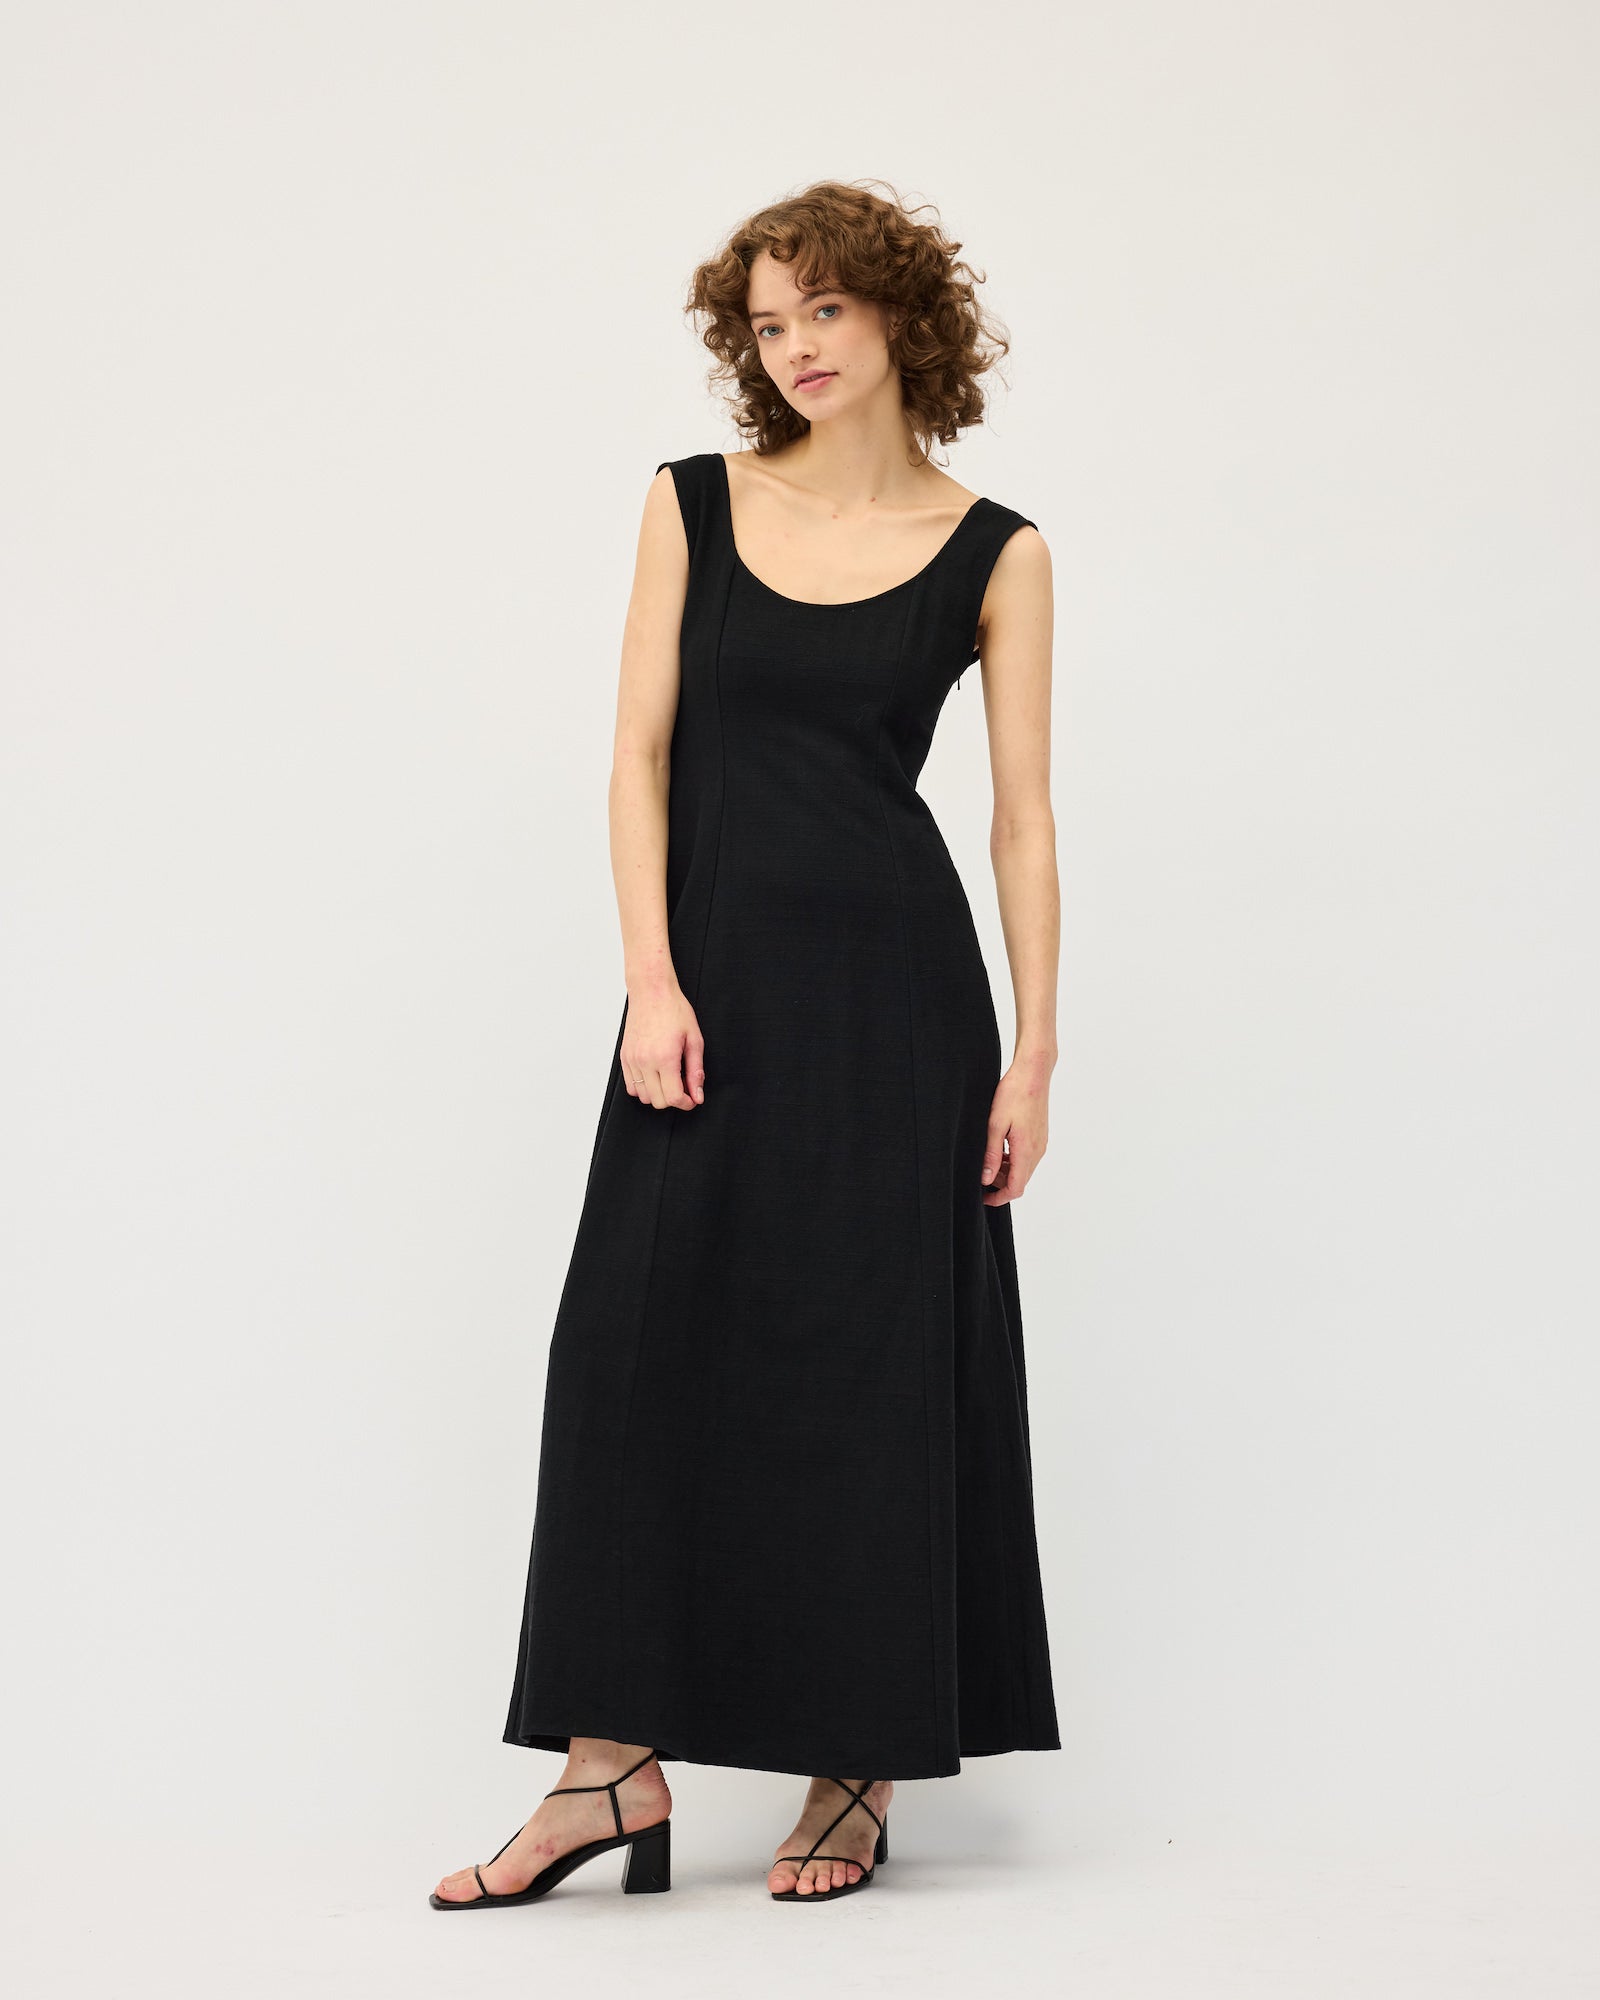 Ada Dress | Black & Natural $390